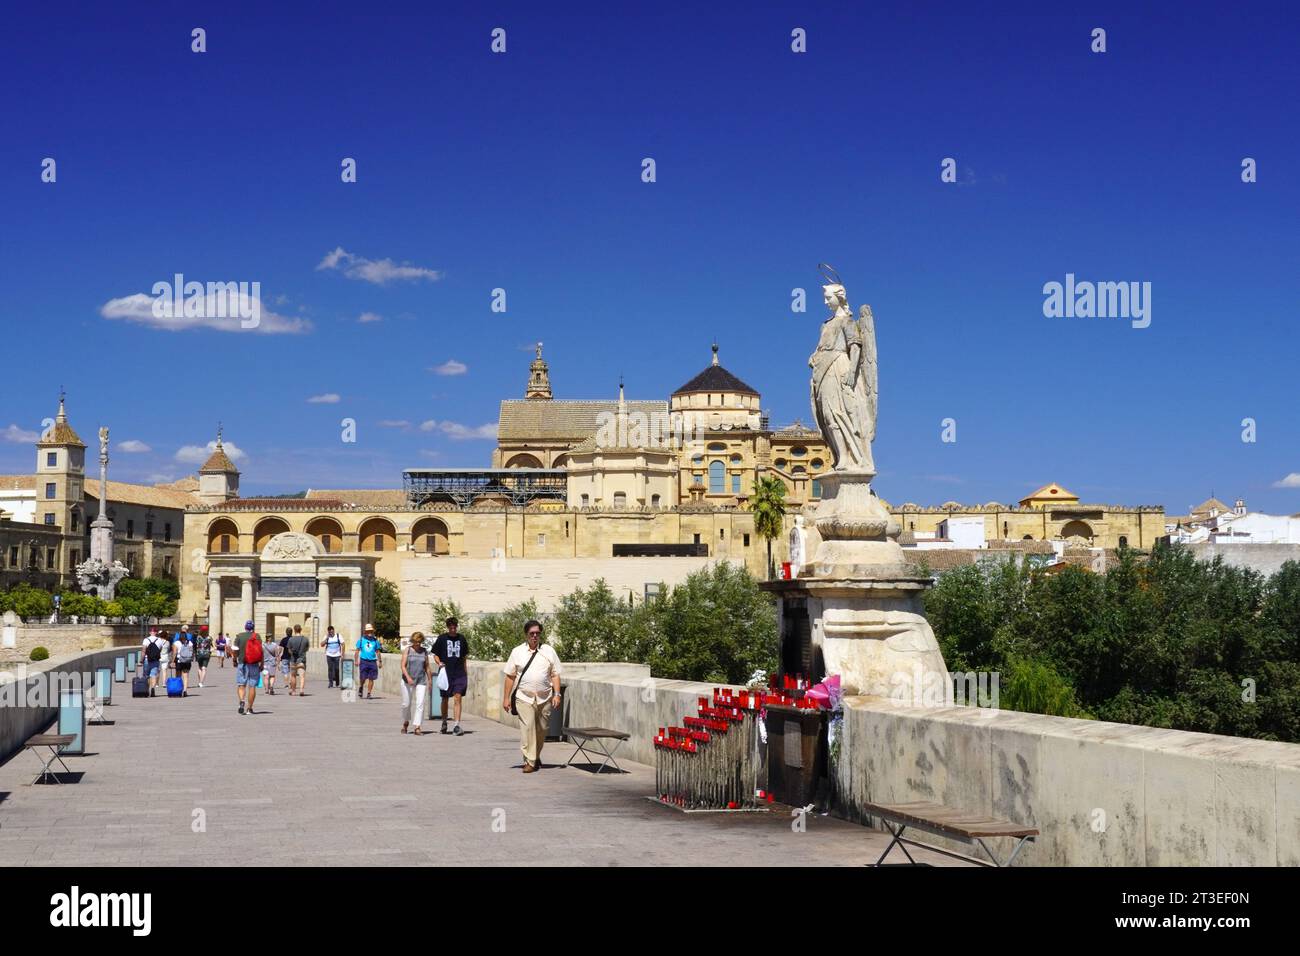 España, Andalucía, Córdoba: Turistas en el Puente Romano pasando por la estatua del Arcángel Rafael (Triunfo de San Rafael) fechando Foto de stock